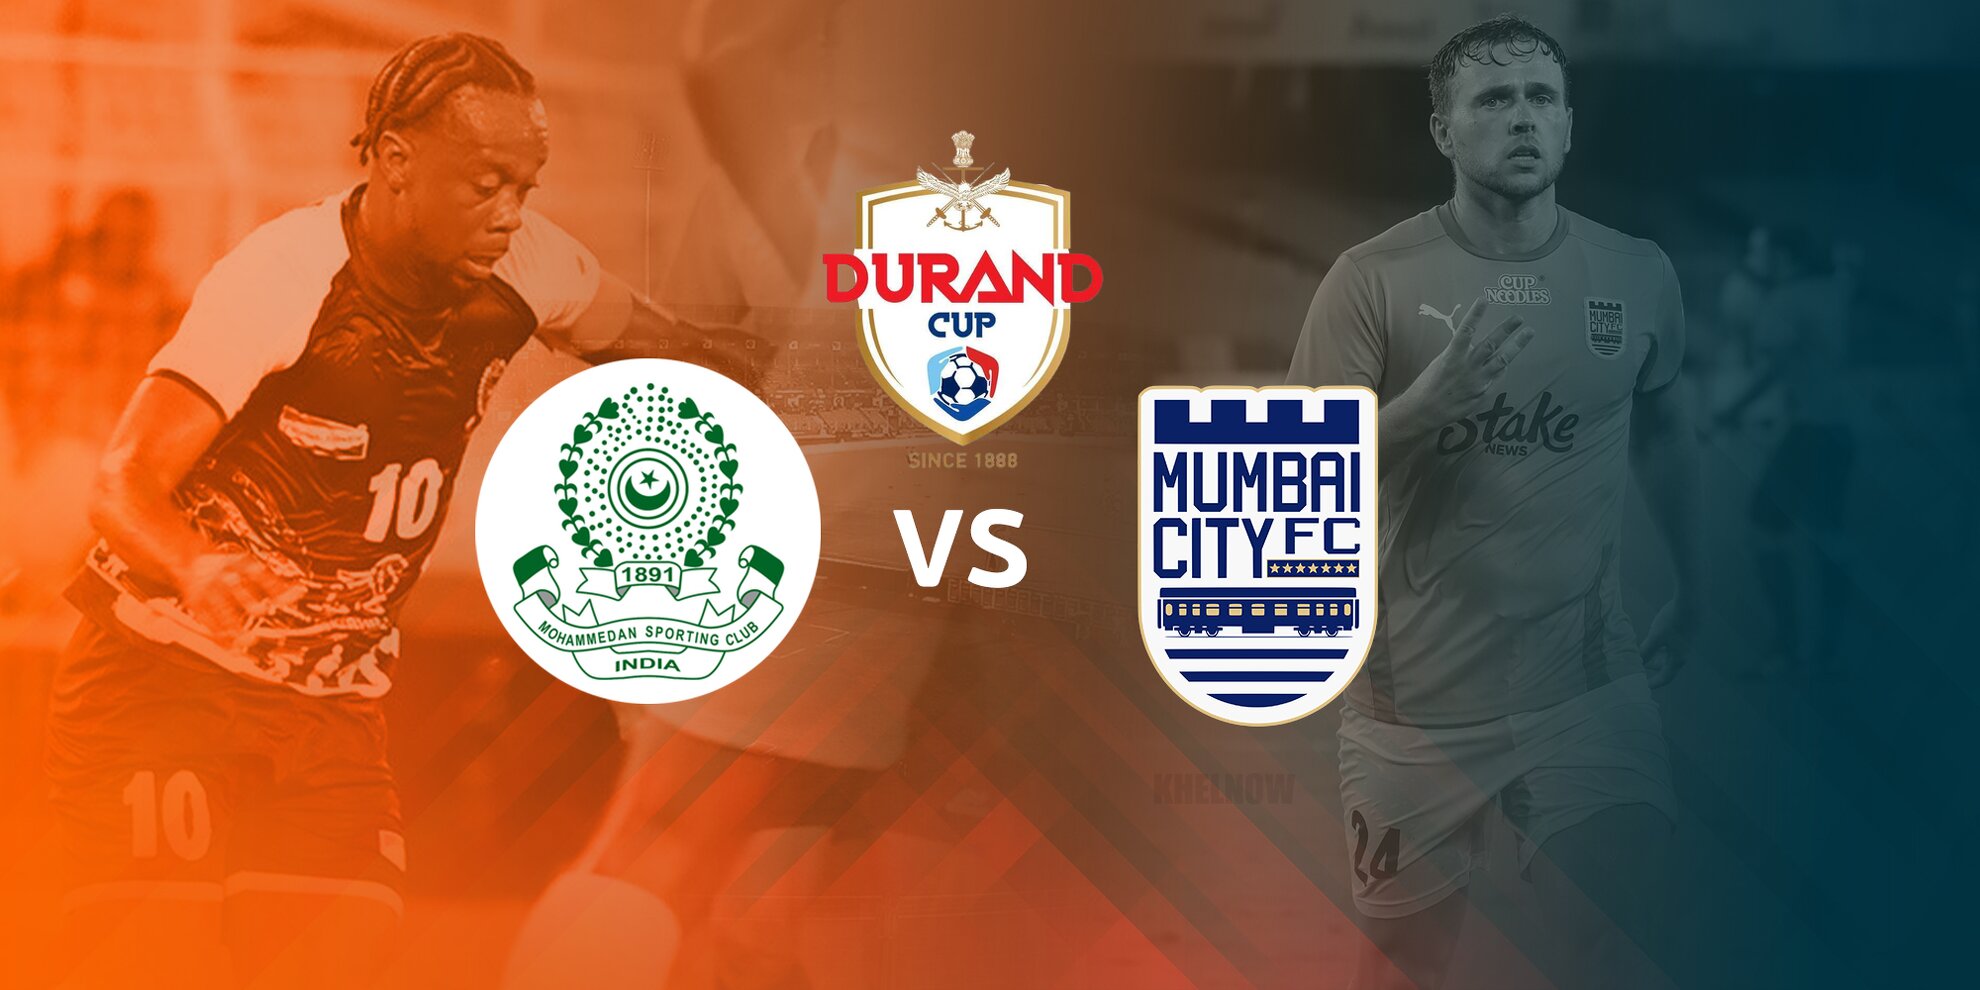 Mohammedan SC Mumbai City Durand Cup 2022